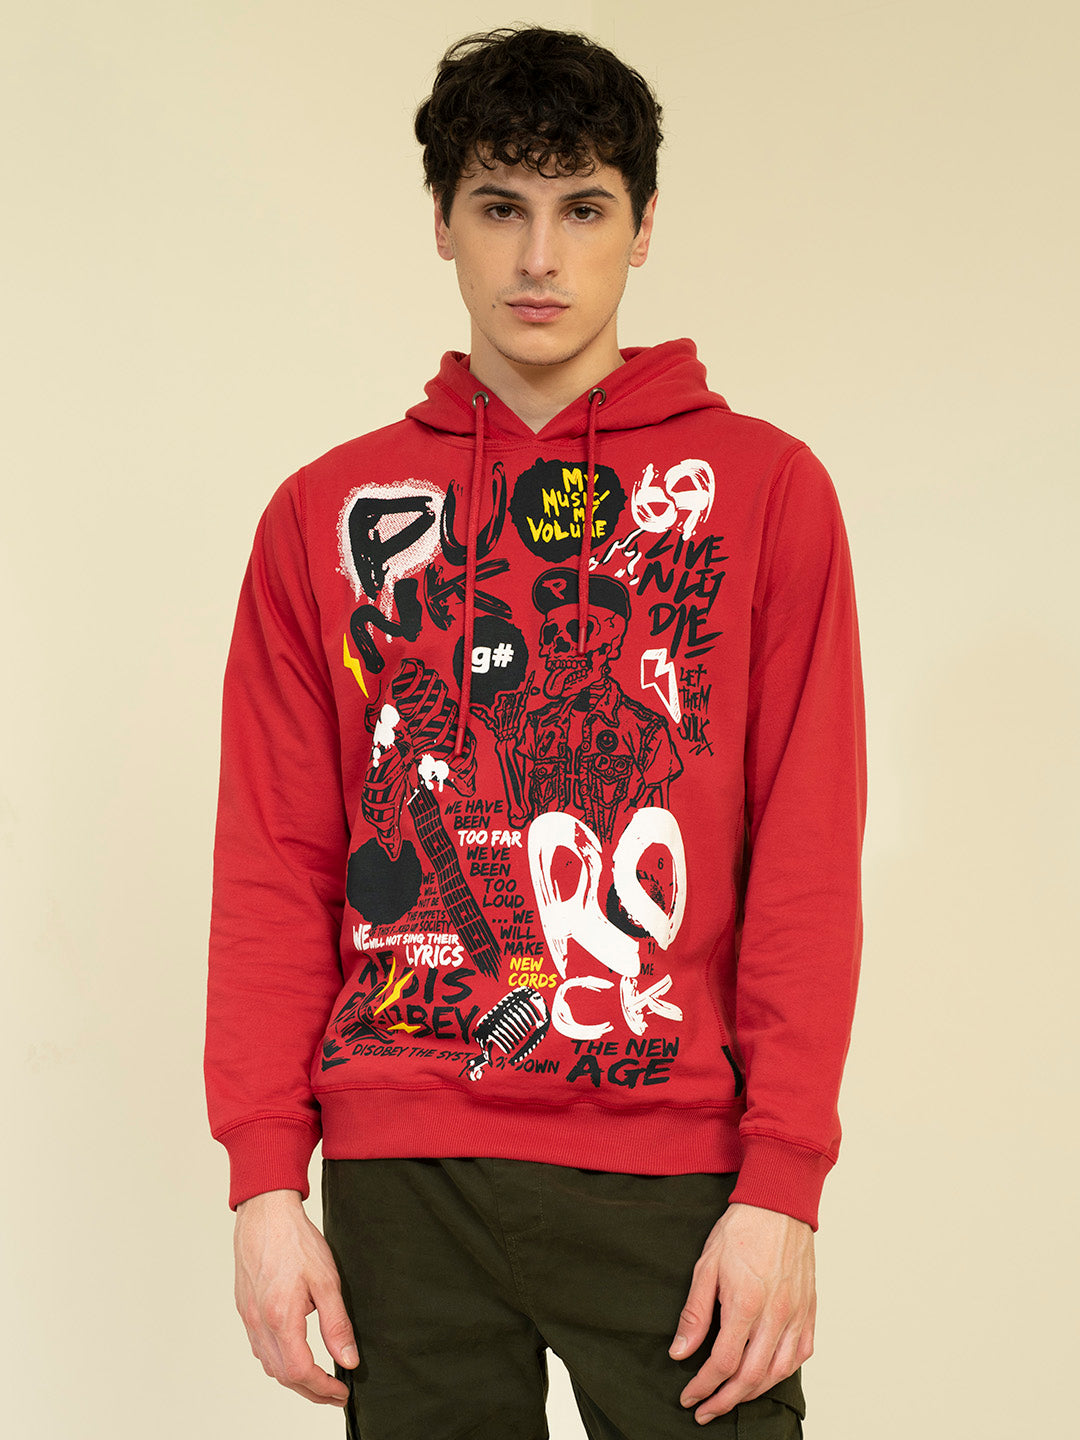 PUNK-ROCK-69-Red Hoodie Sweatshirt